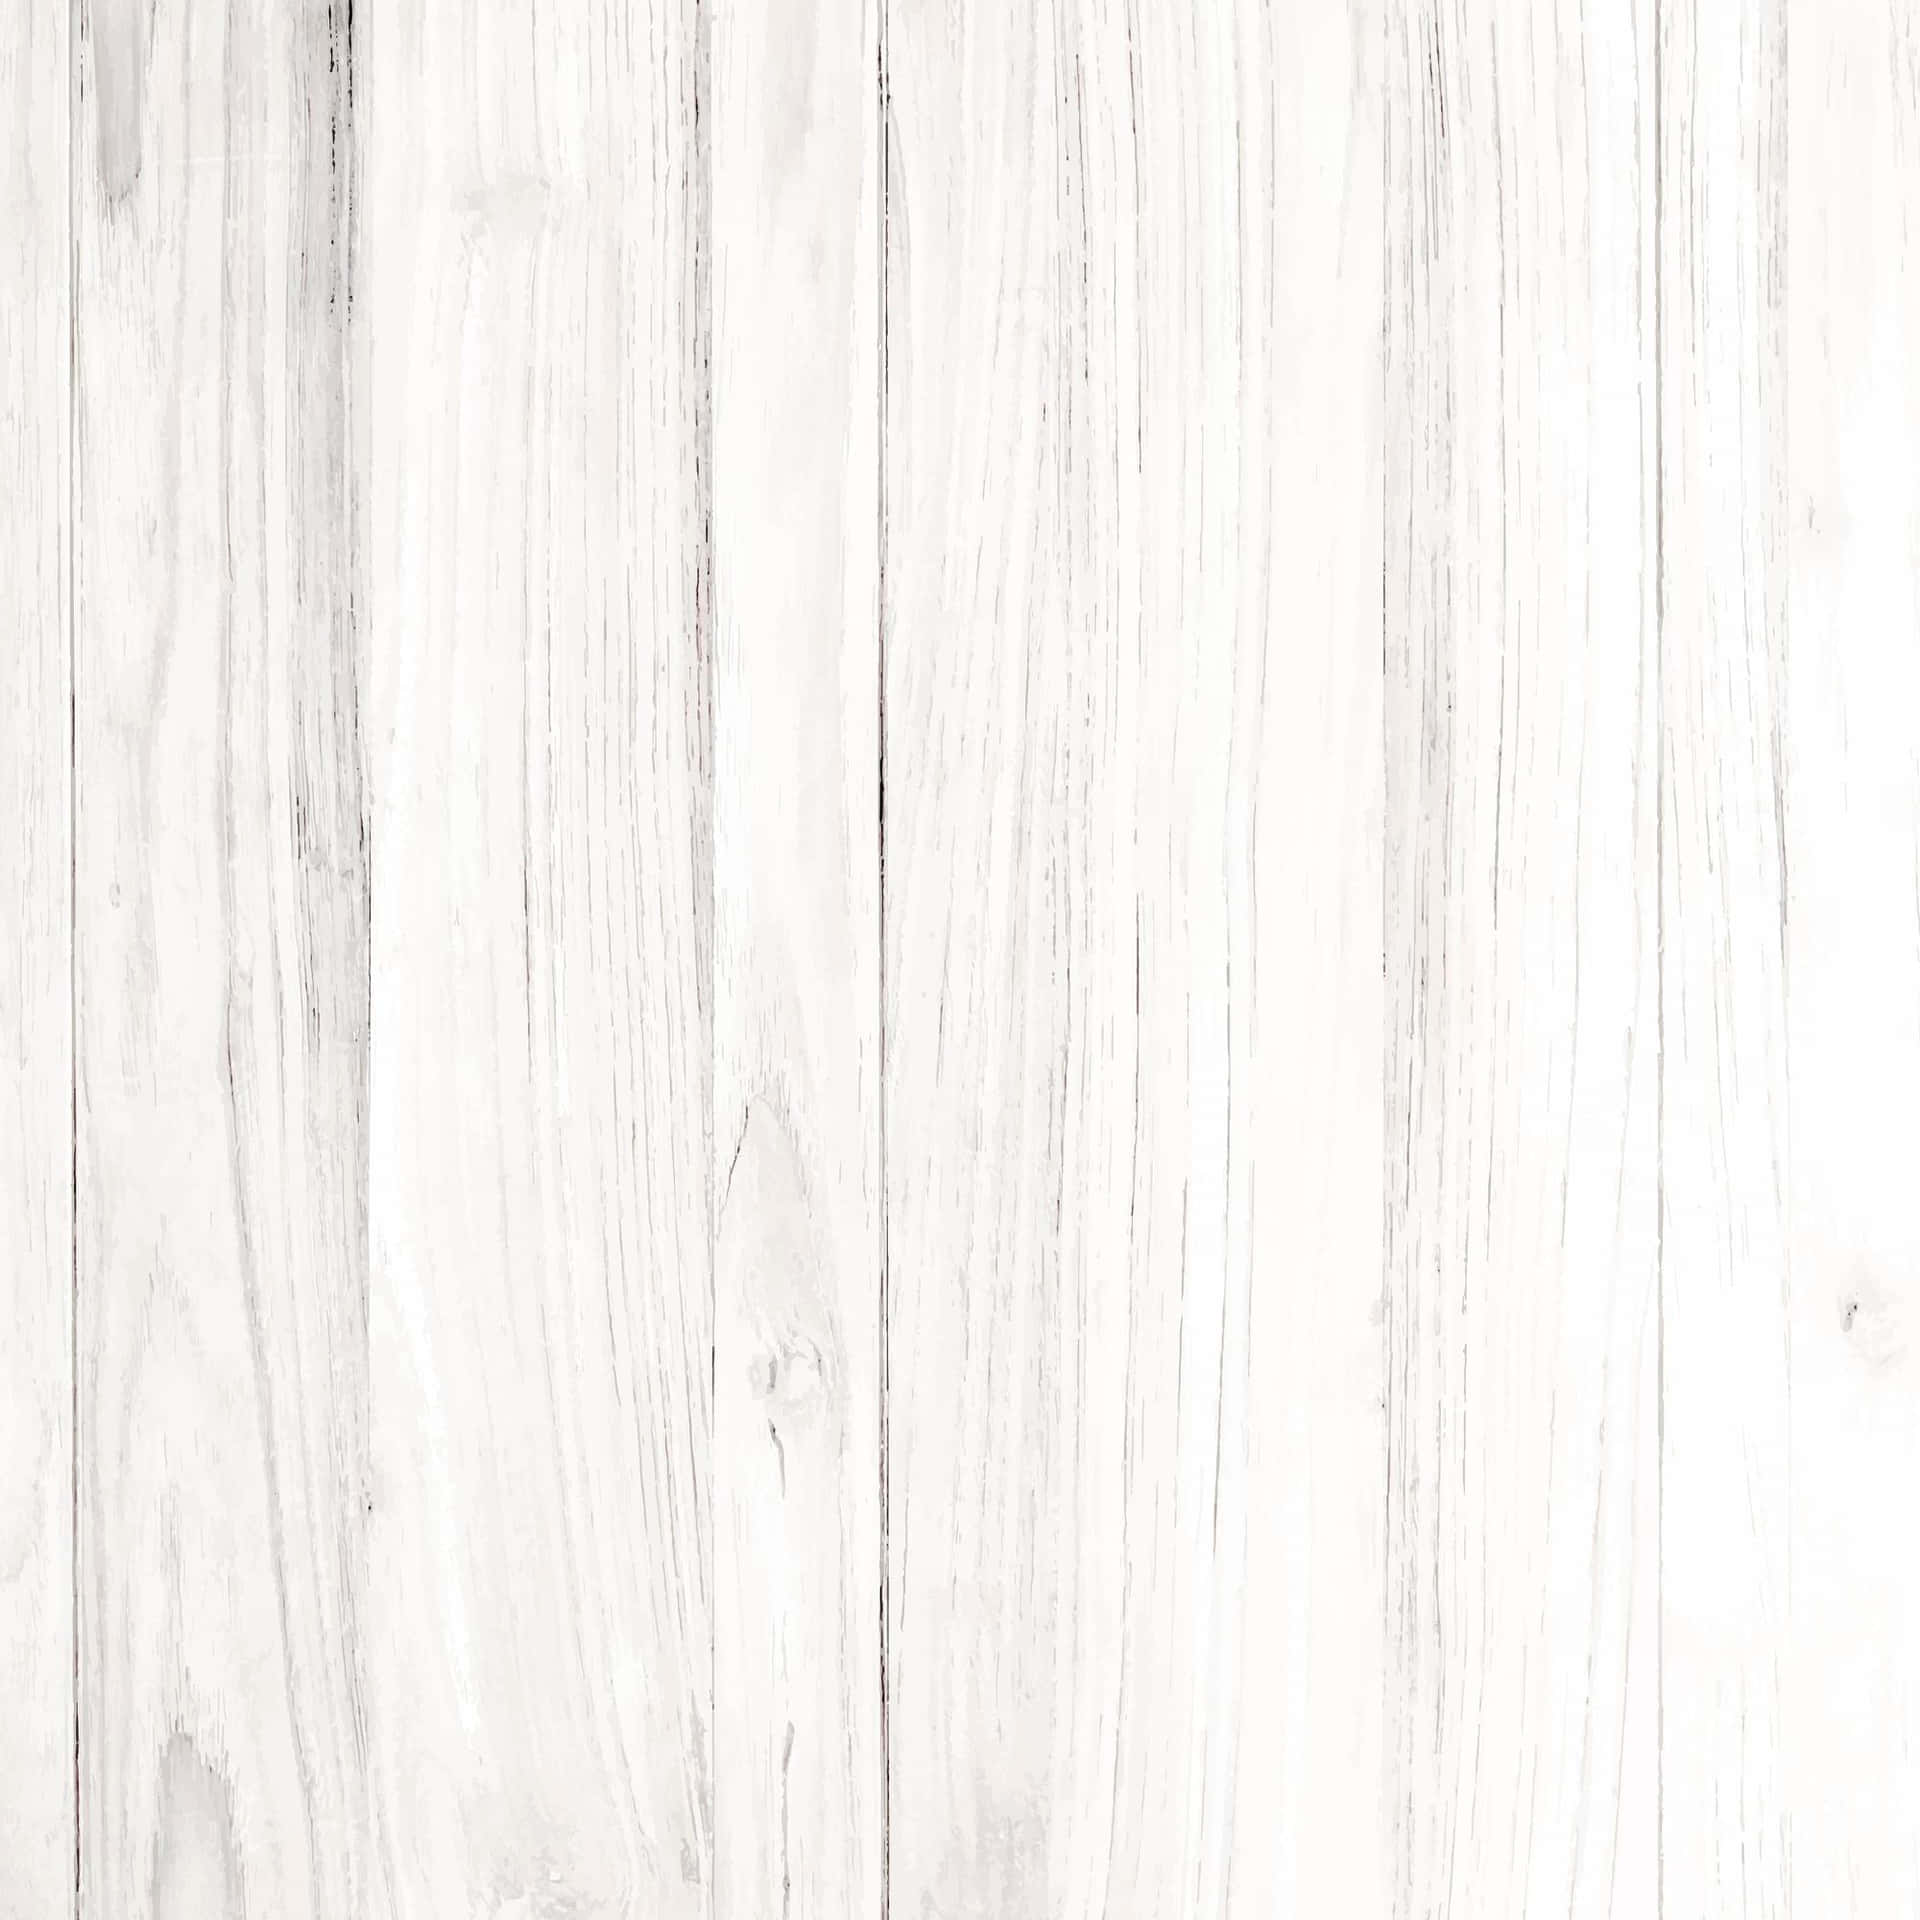 Elegant White Wood Background